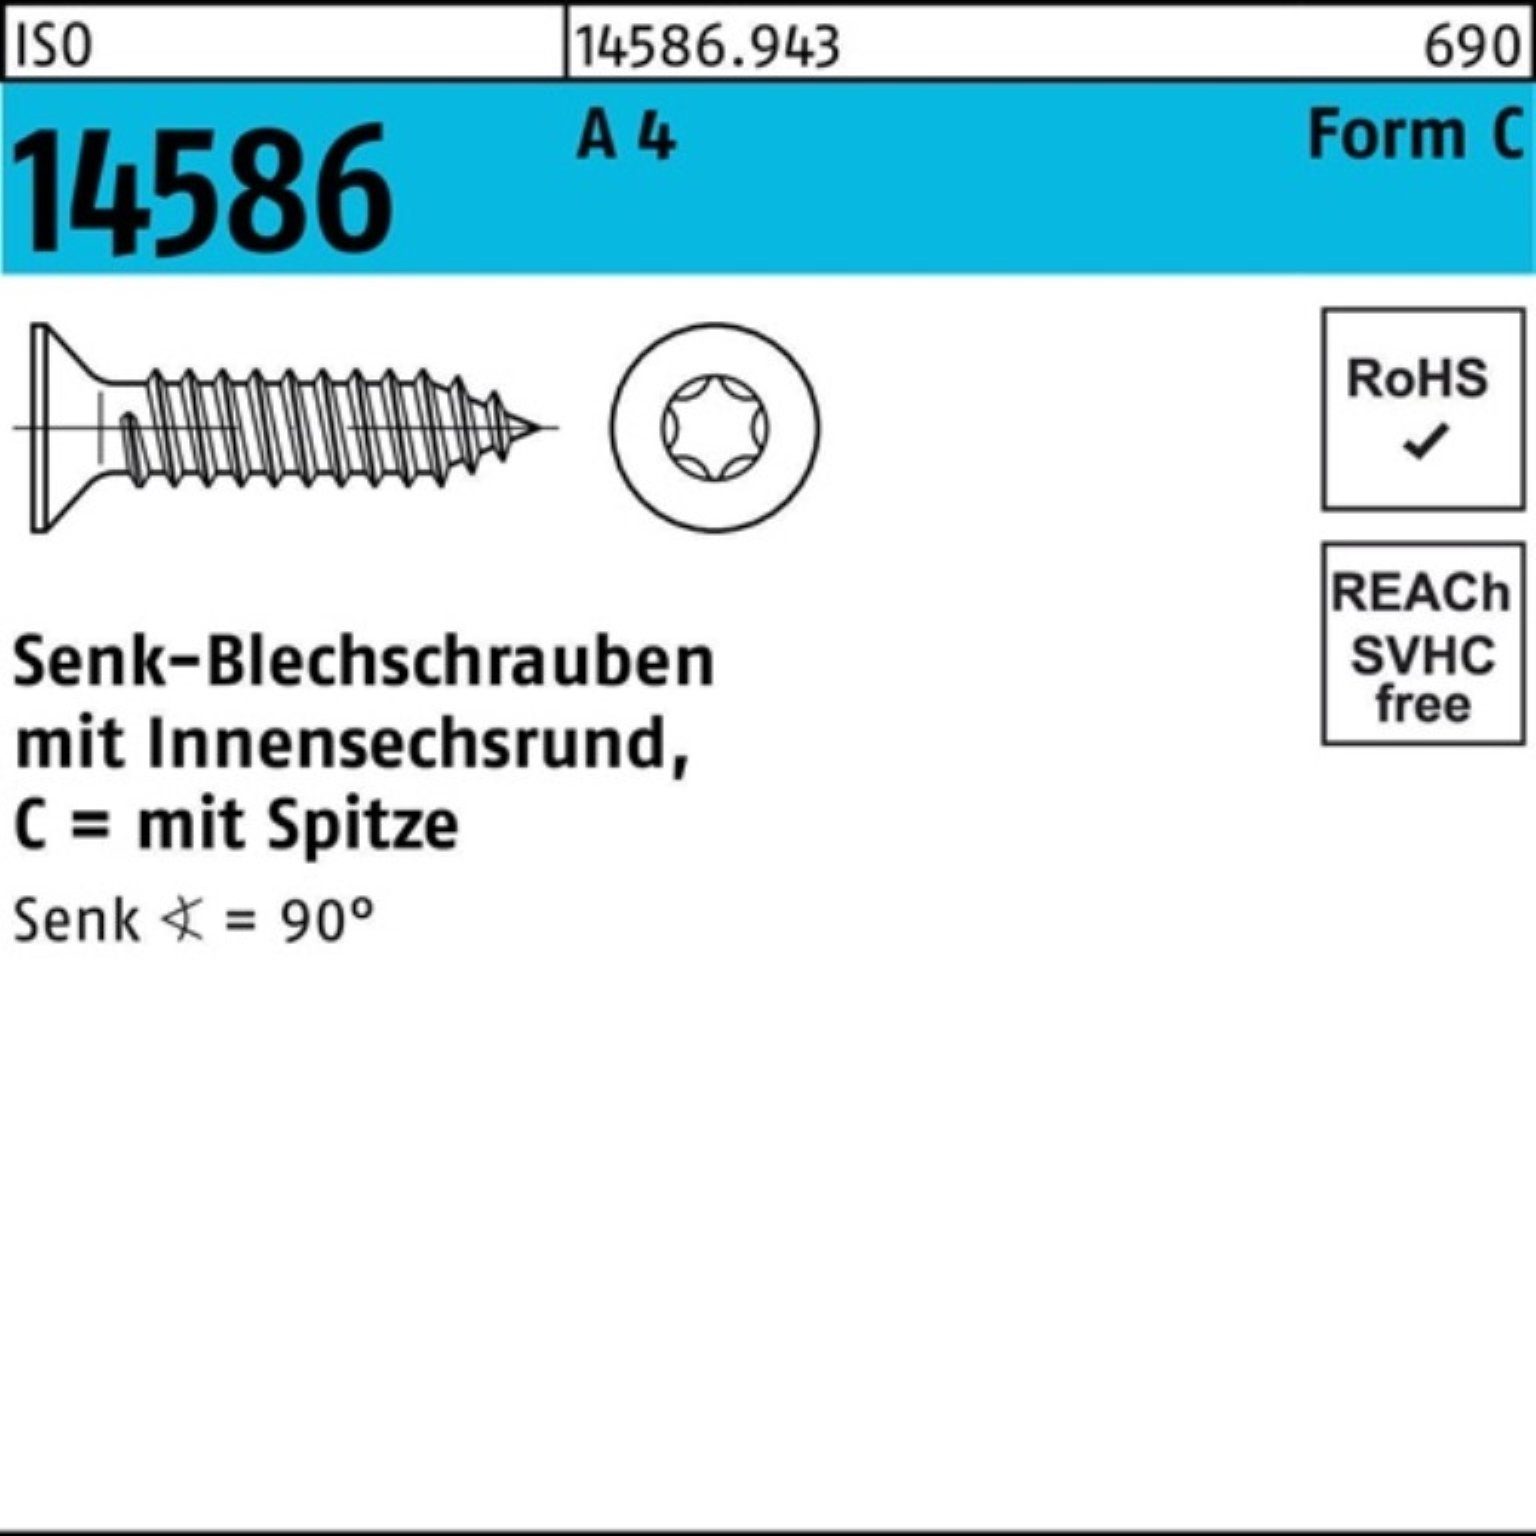 Reyher Schraube 1000er Pack Senkblechschraube ISO 14586 ISR/Spitze 2,9x 22-T10 A 4 100